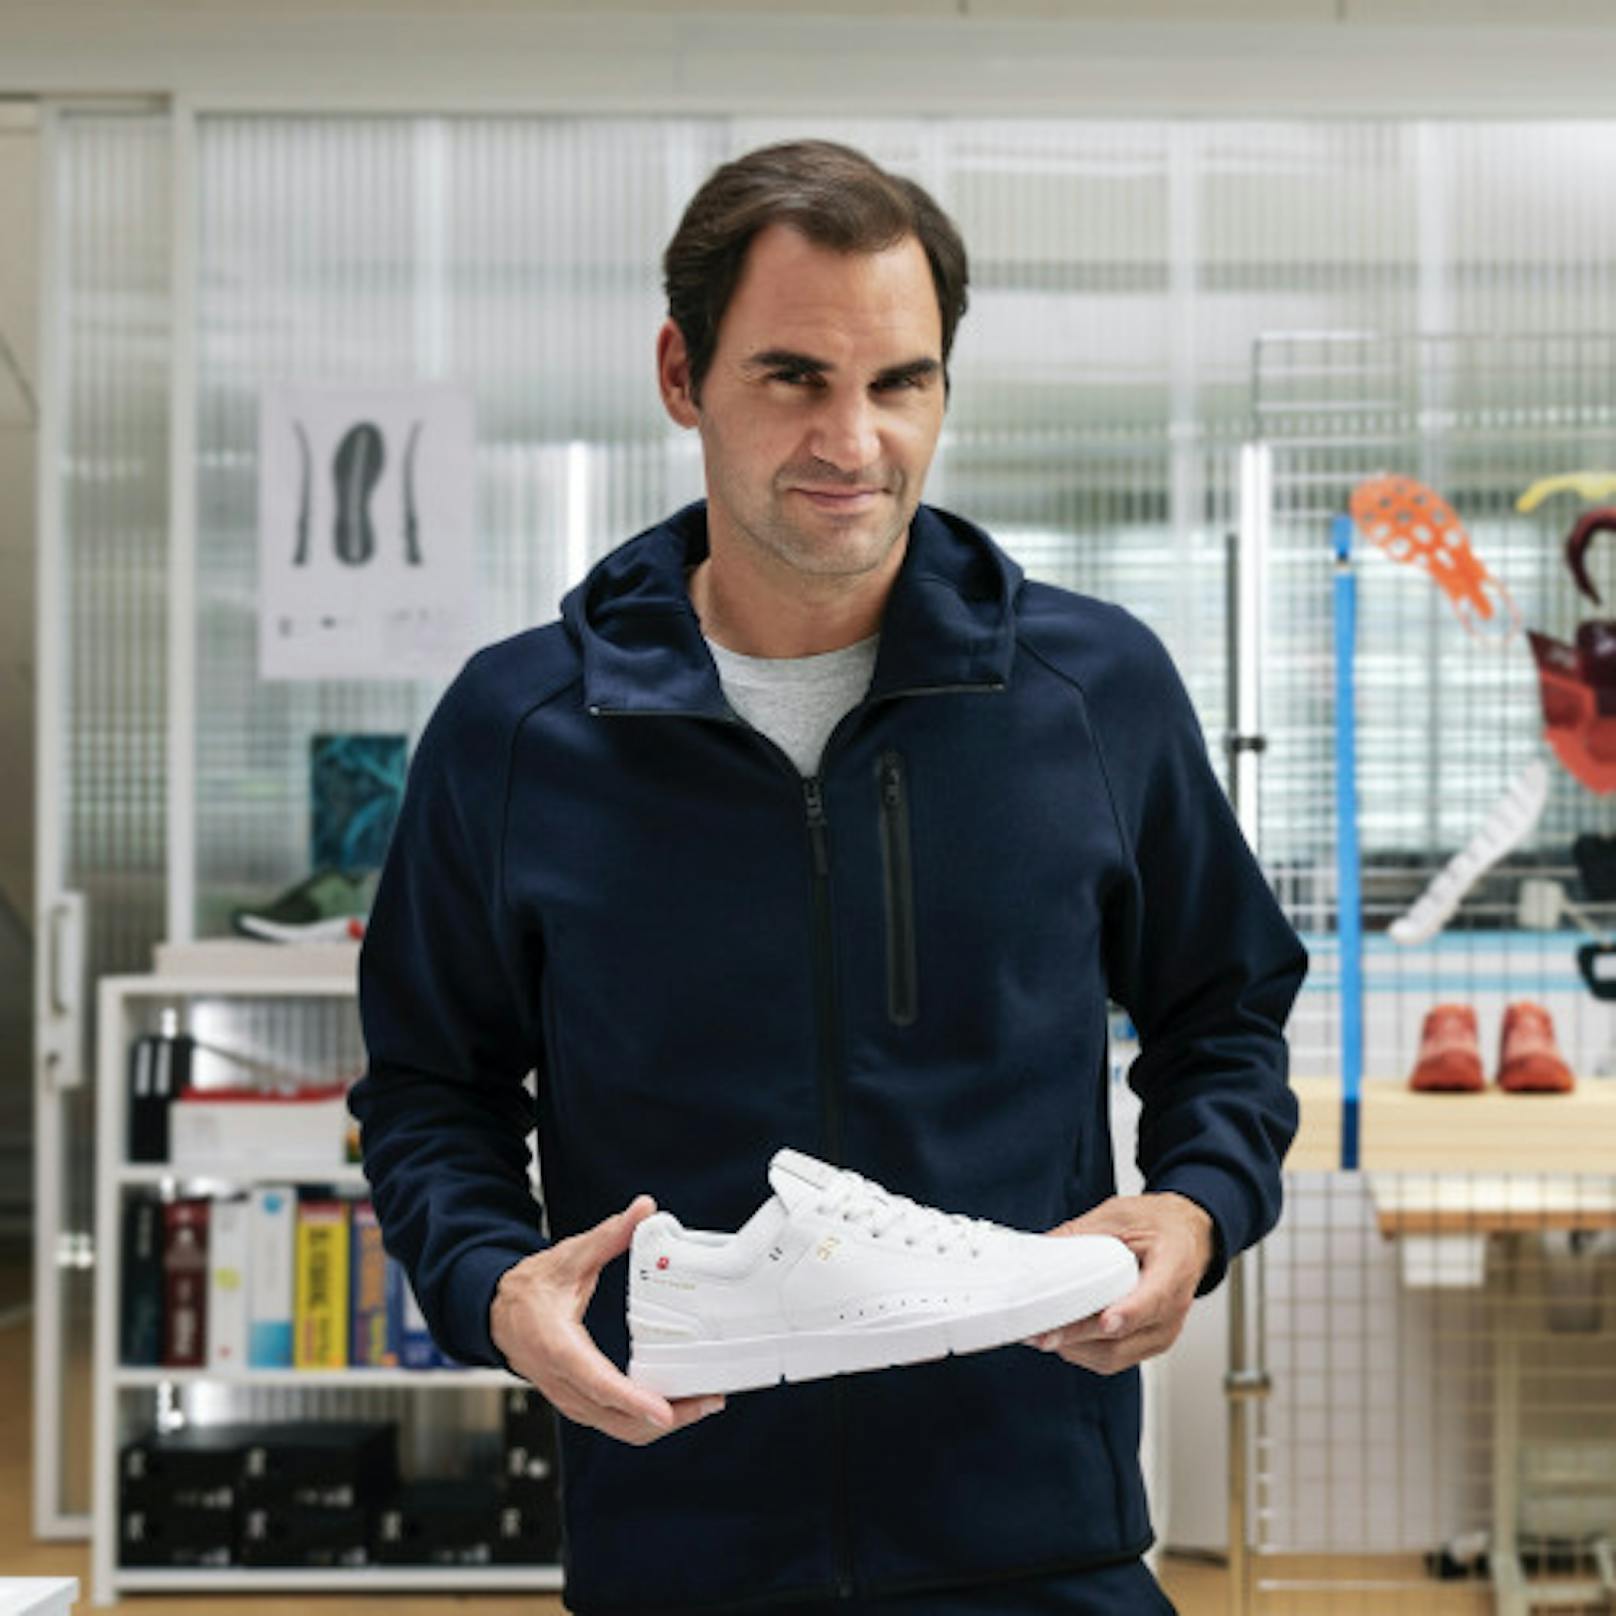 "Das minimalistische Design und der leichtfüssige Komfort von On-Schuhen haben mich schon vor Jahren fasziniert", sagt Federer